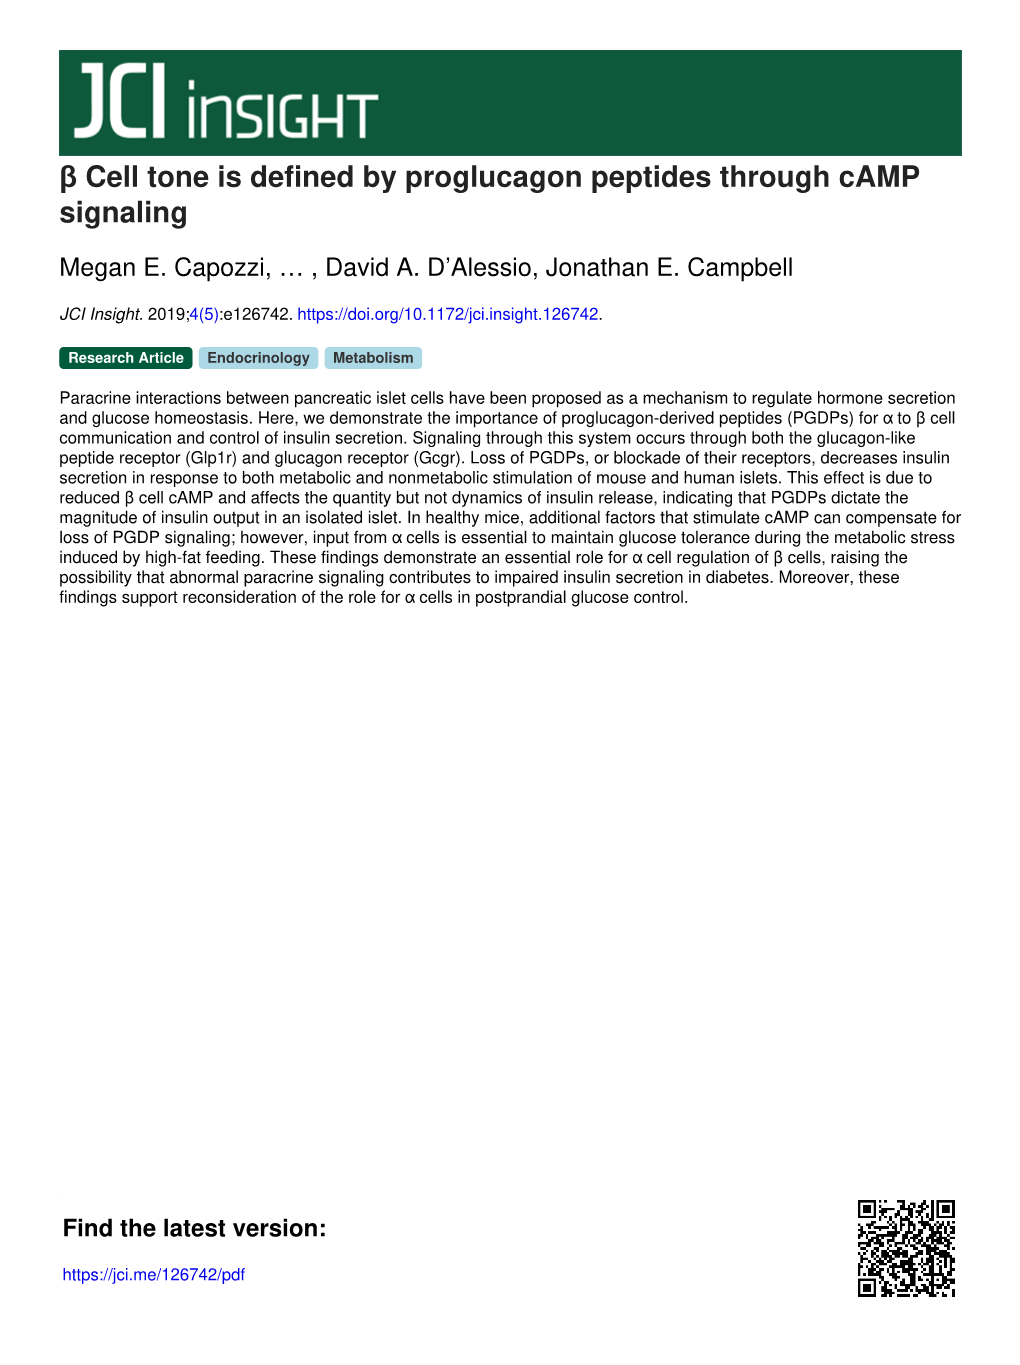 Β Cell Tone Is Defined by Proglucagon Peptides Through Camp Signaling